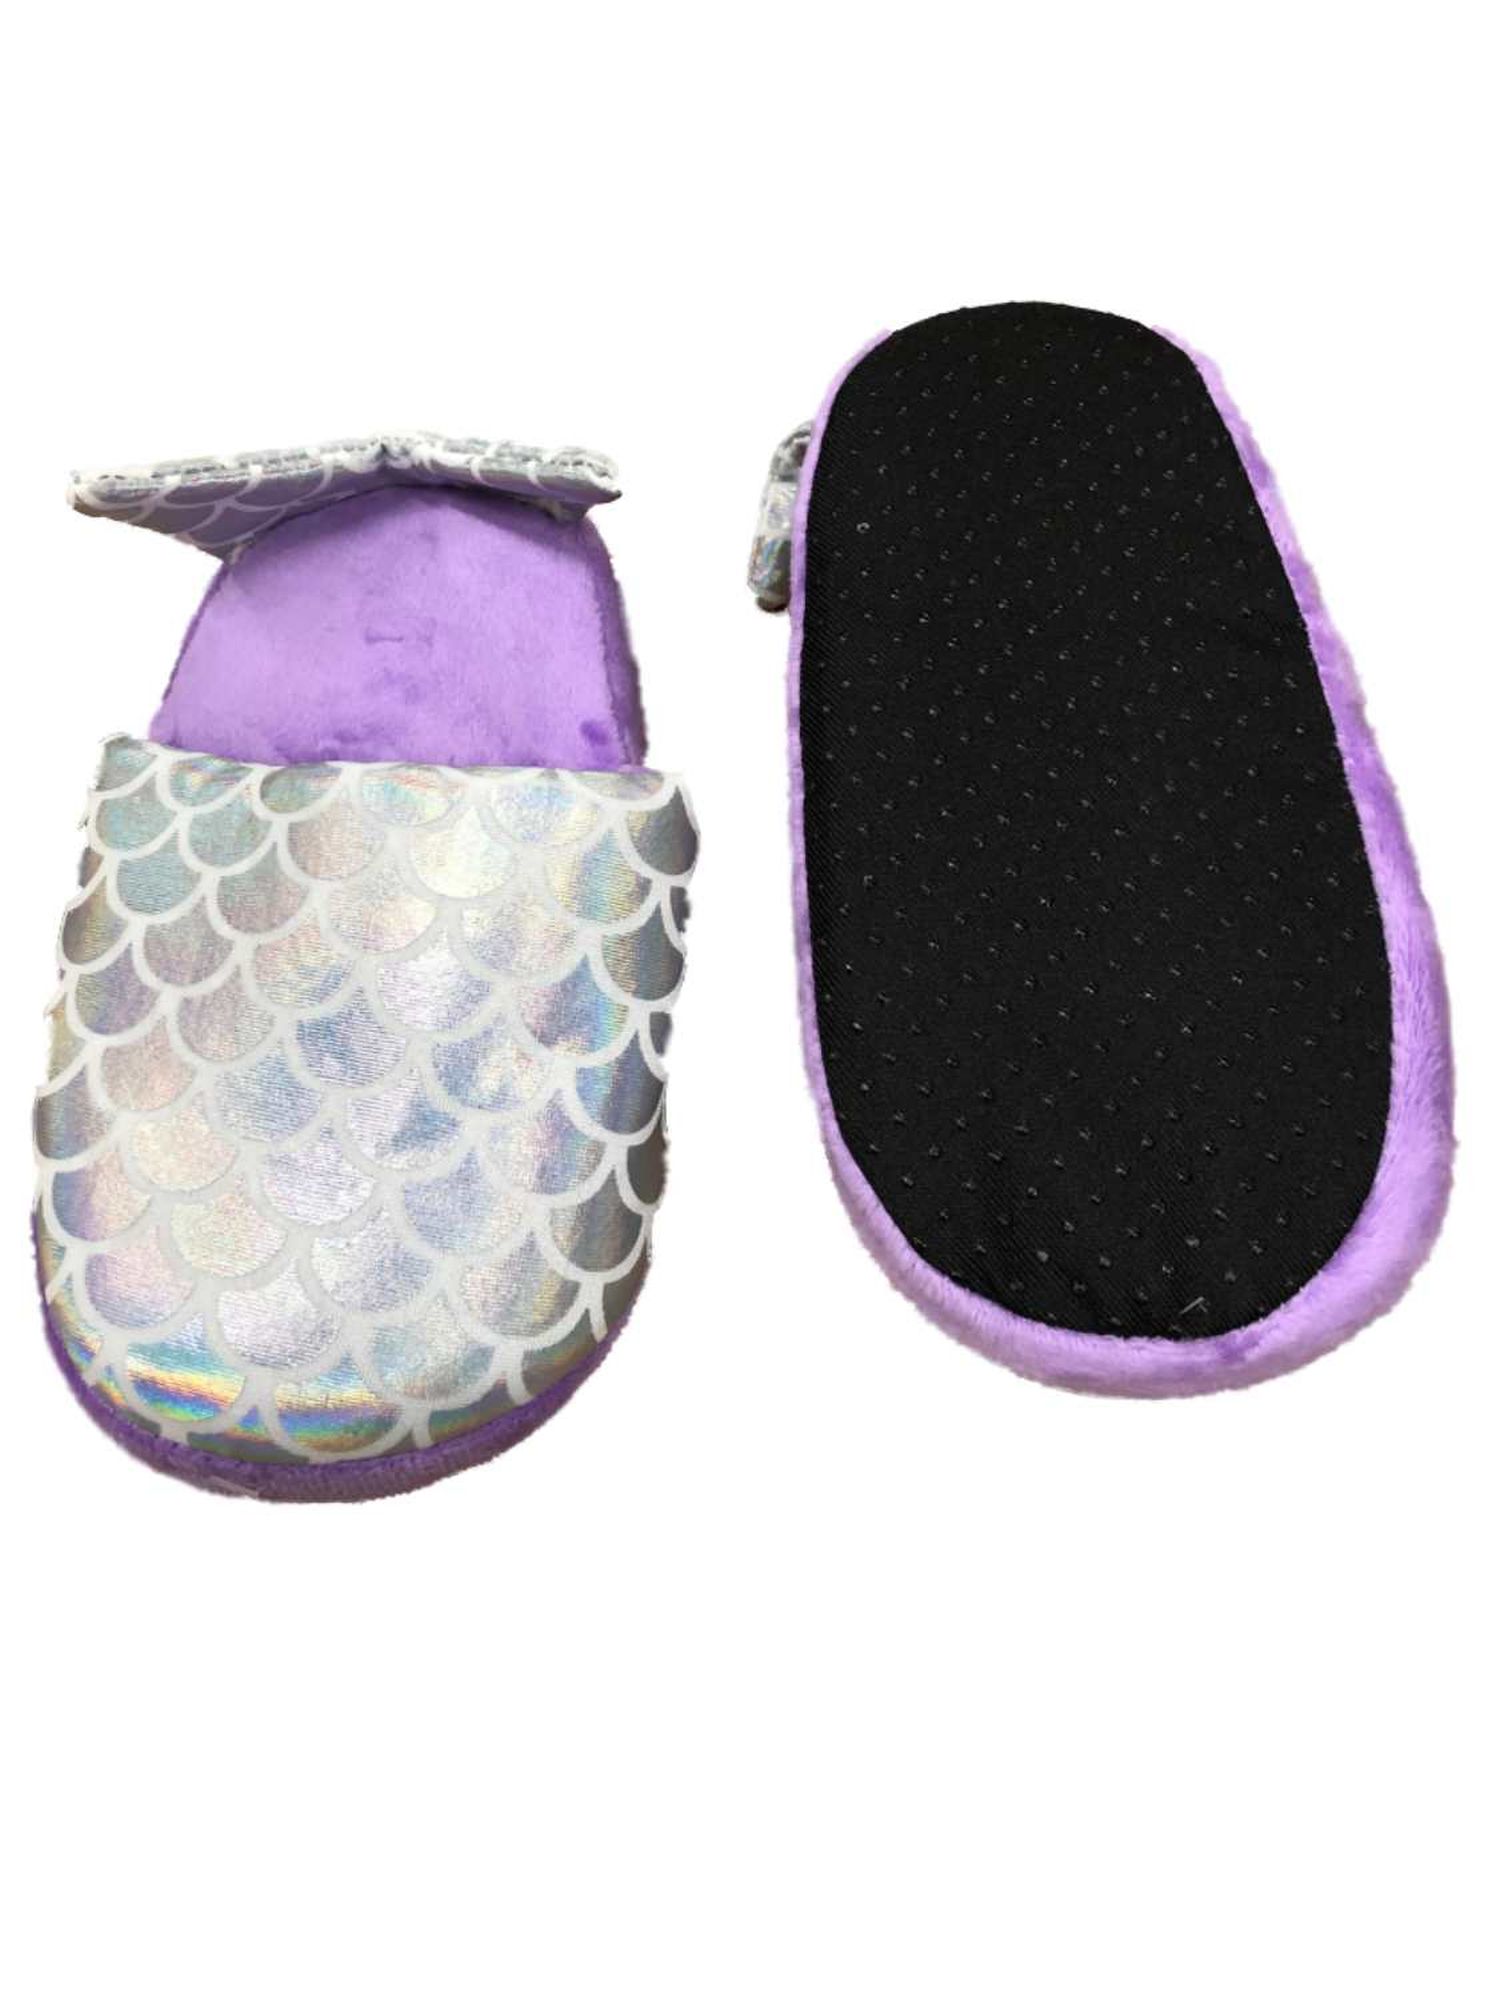 mermaid slippers